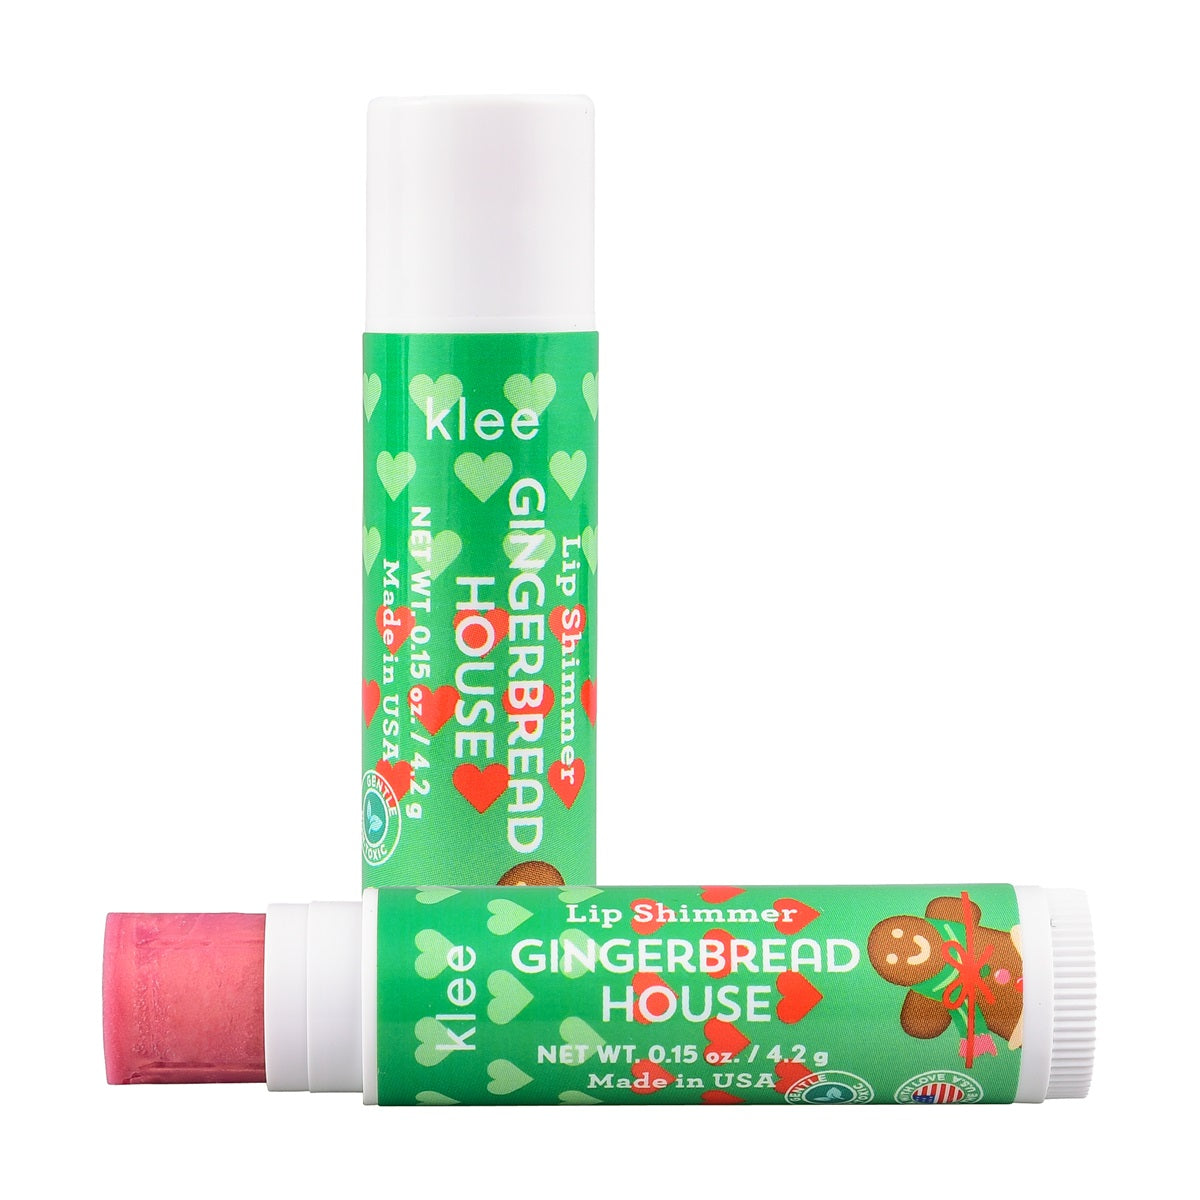 Klee Naturals - Xmas Edition - Natural Mineral Blush &amp; Lip Shimmer Duo 聖誕版 - 天然礦物胭脂及唇蜜組合 (Tinsel Dream)